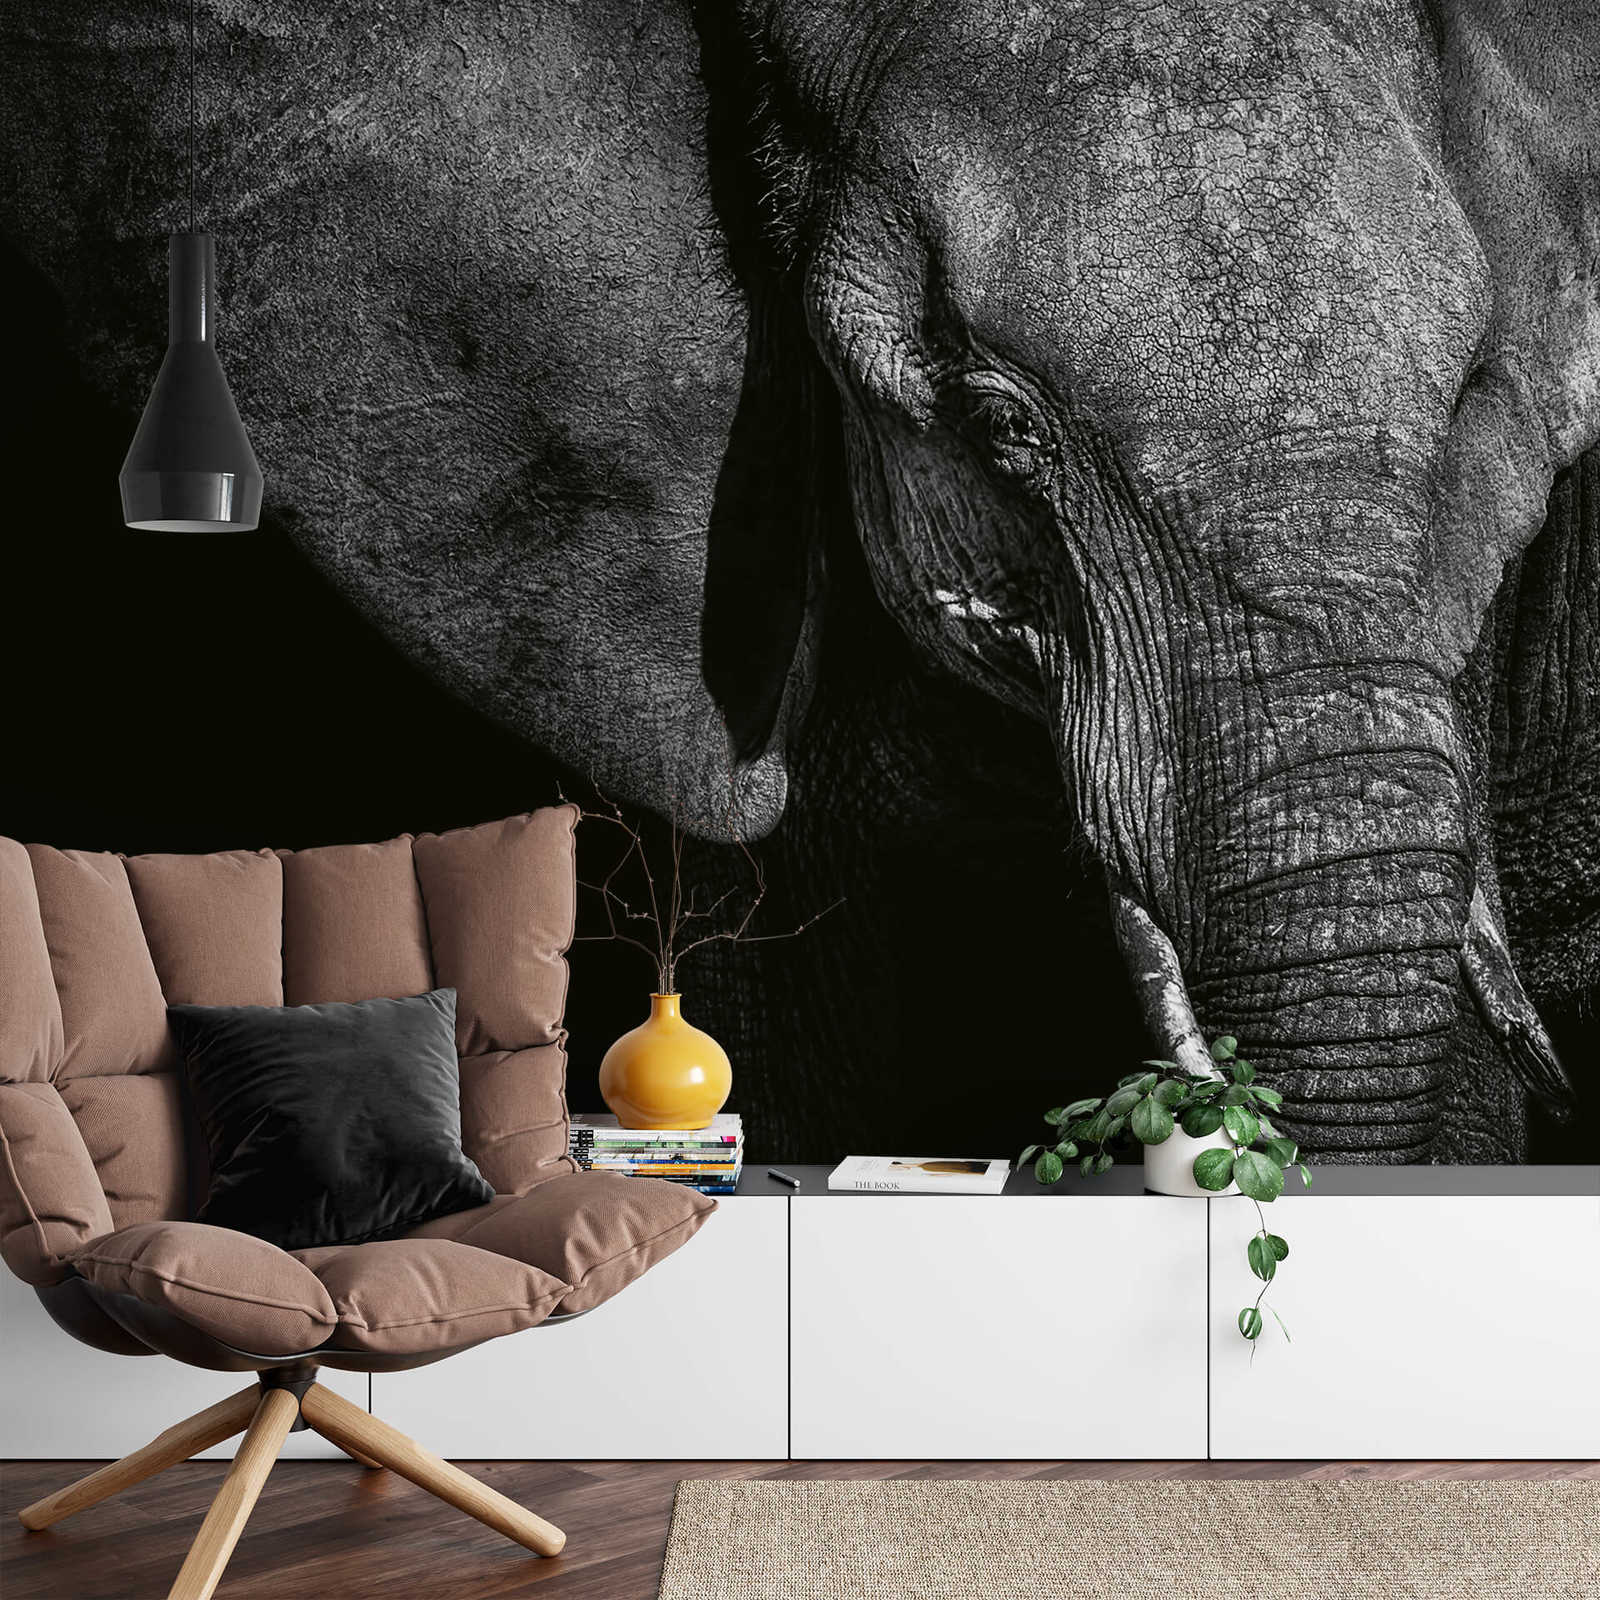             Fototapete Tier Elefant – Schwarz, Grau, Weiß
        